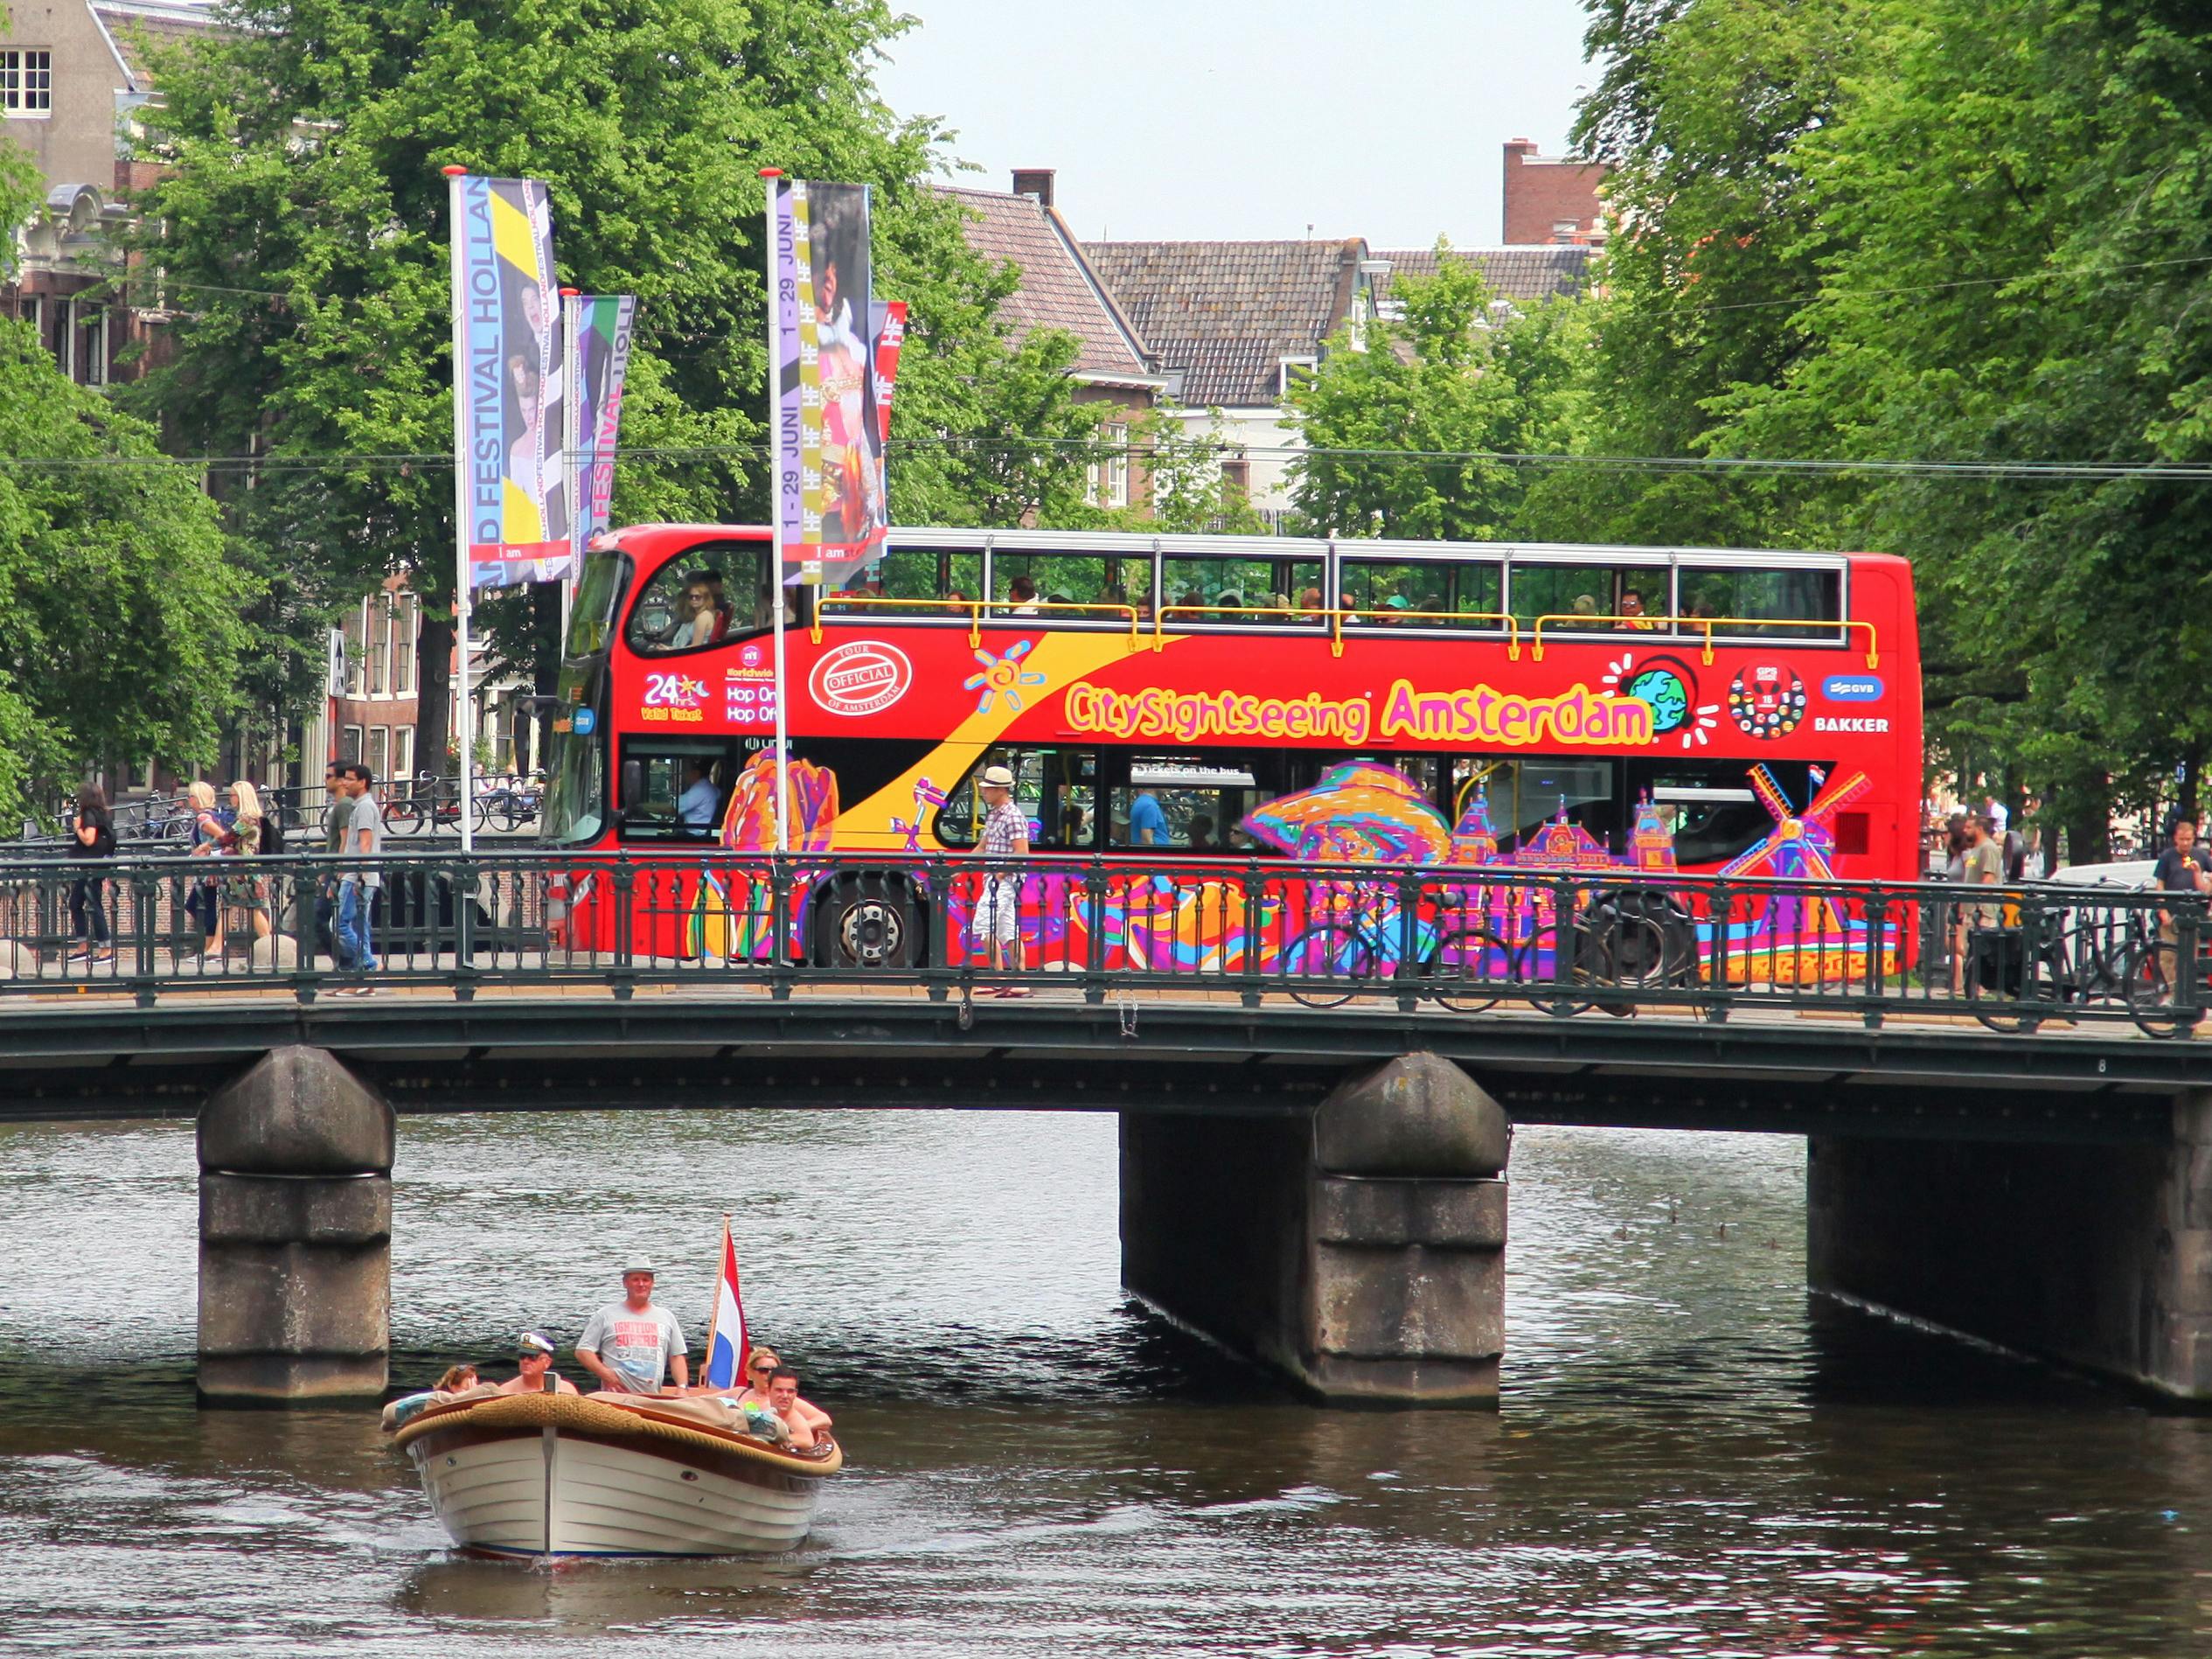 Wycieczka autobusem Hop-On Hop-Off City Sightseeing w Amsterdamie i rejs po kanałach